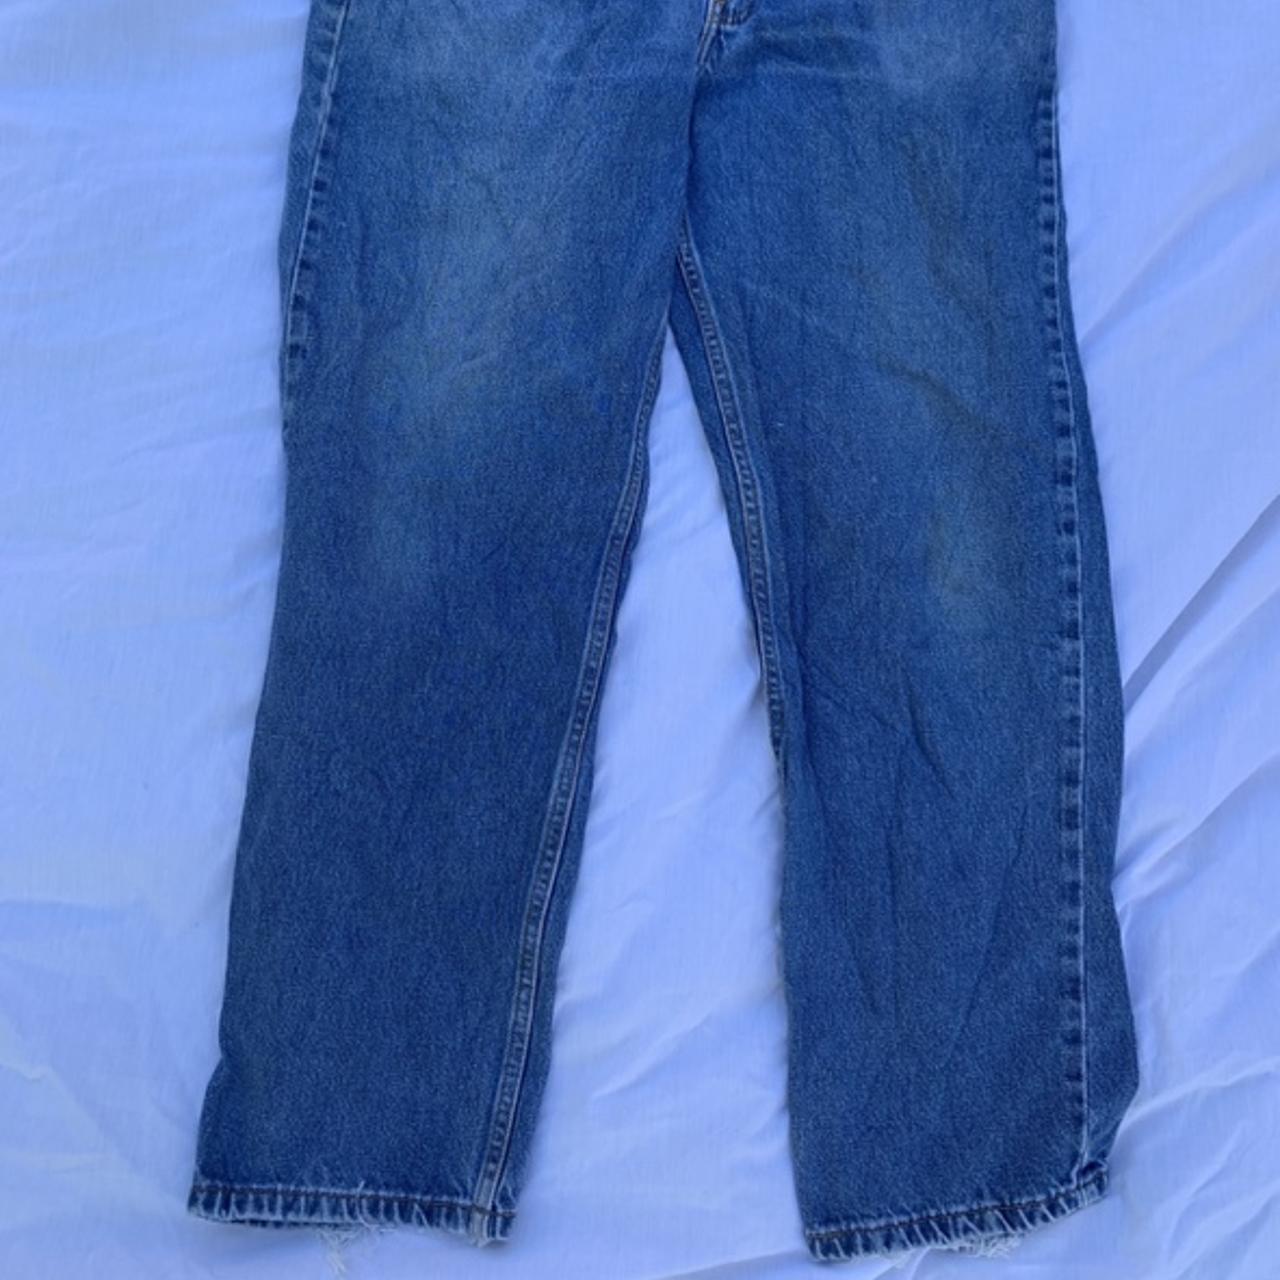 Vintage Levi’s 550 jeans Labeled waist 36 length... - Depop